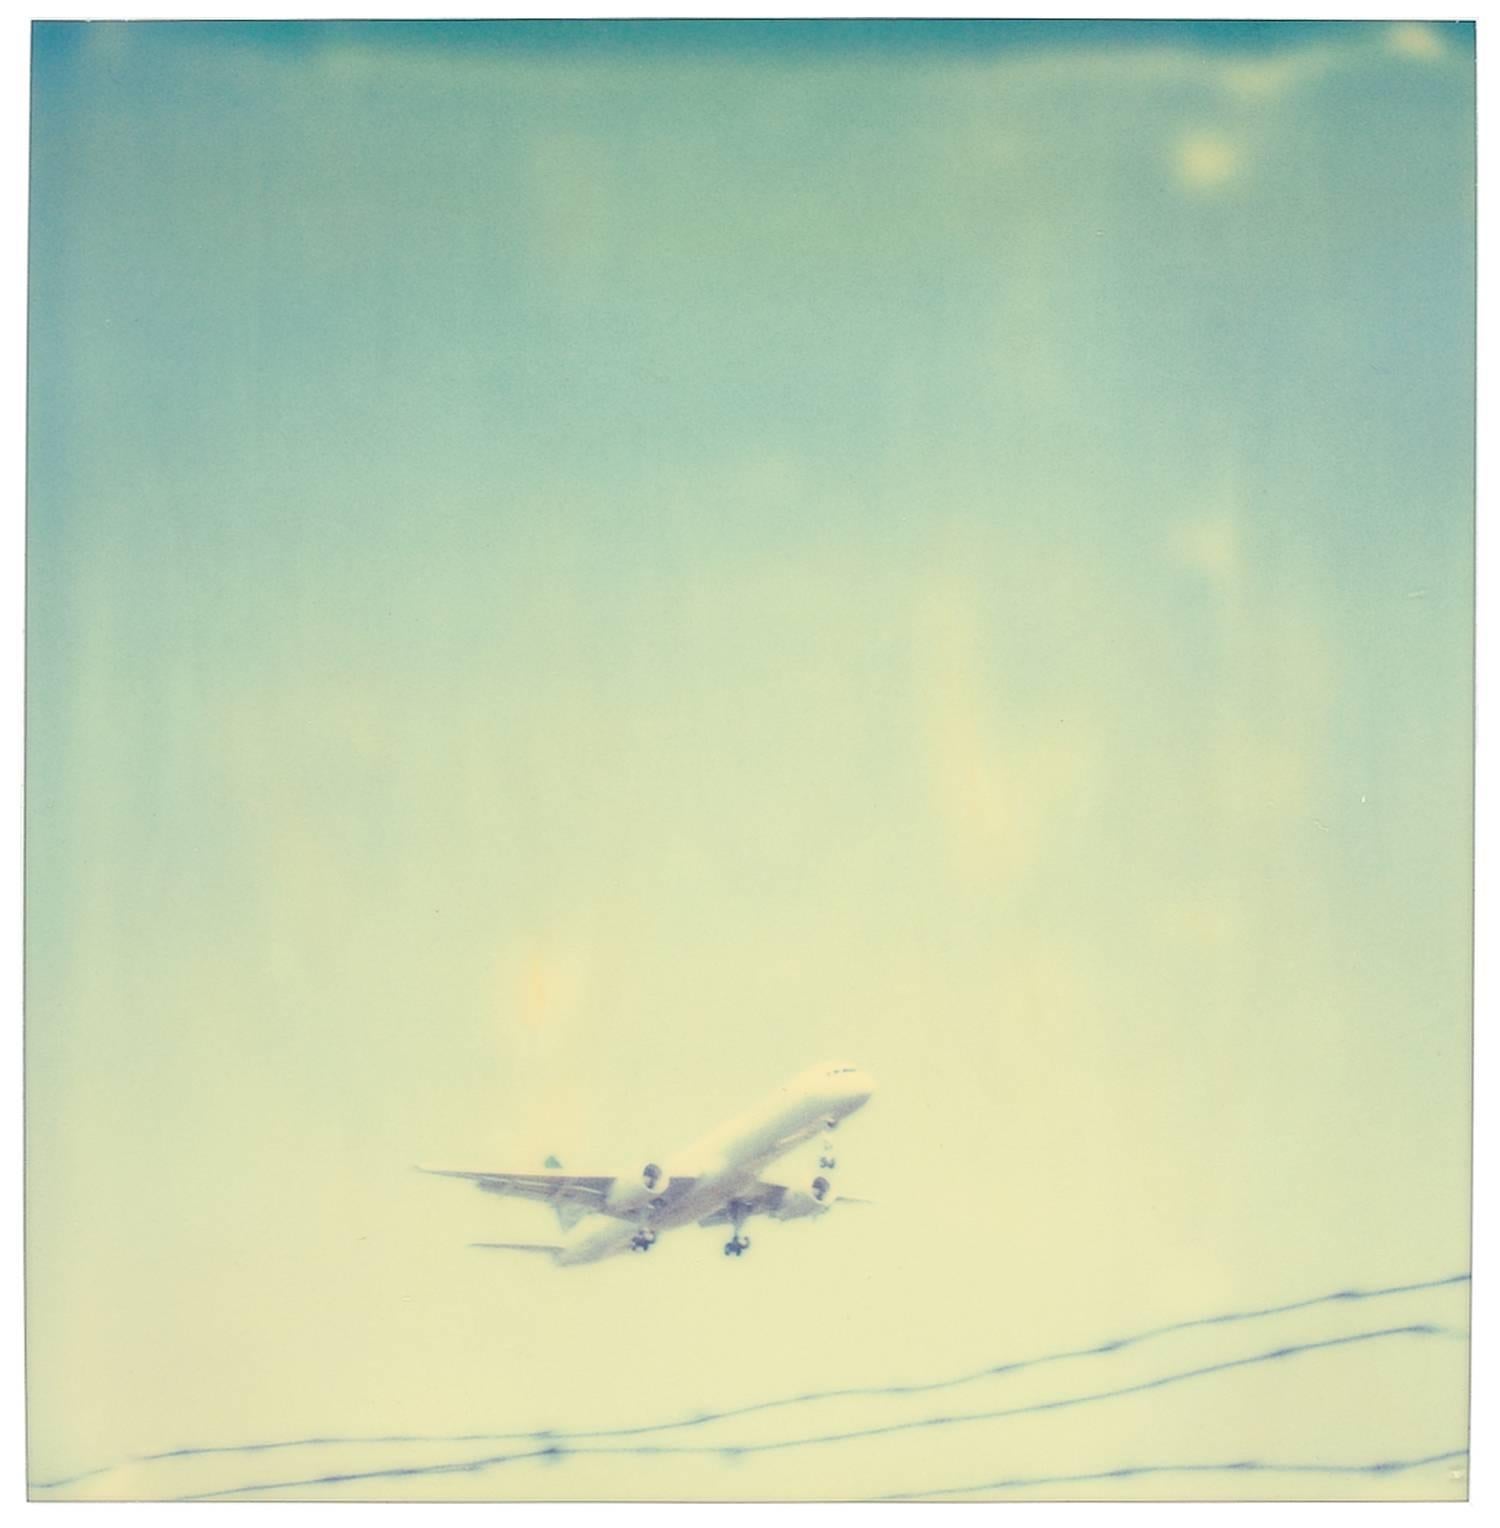 Leaving in a jet plane (29 Palms, CA) – Diptychon – Photograph von Stefanie Schneider